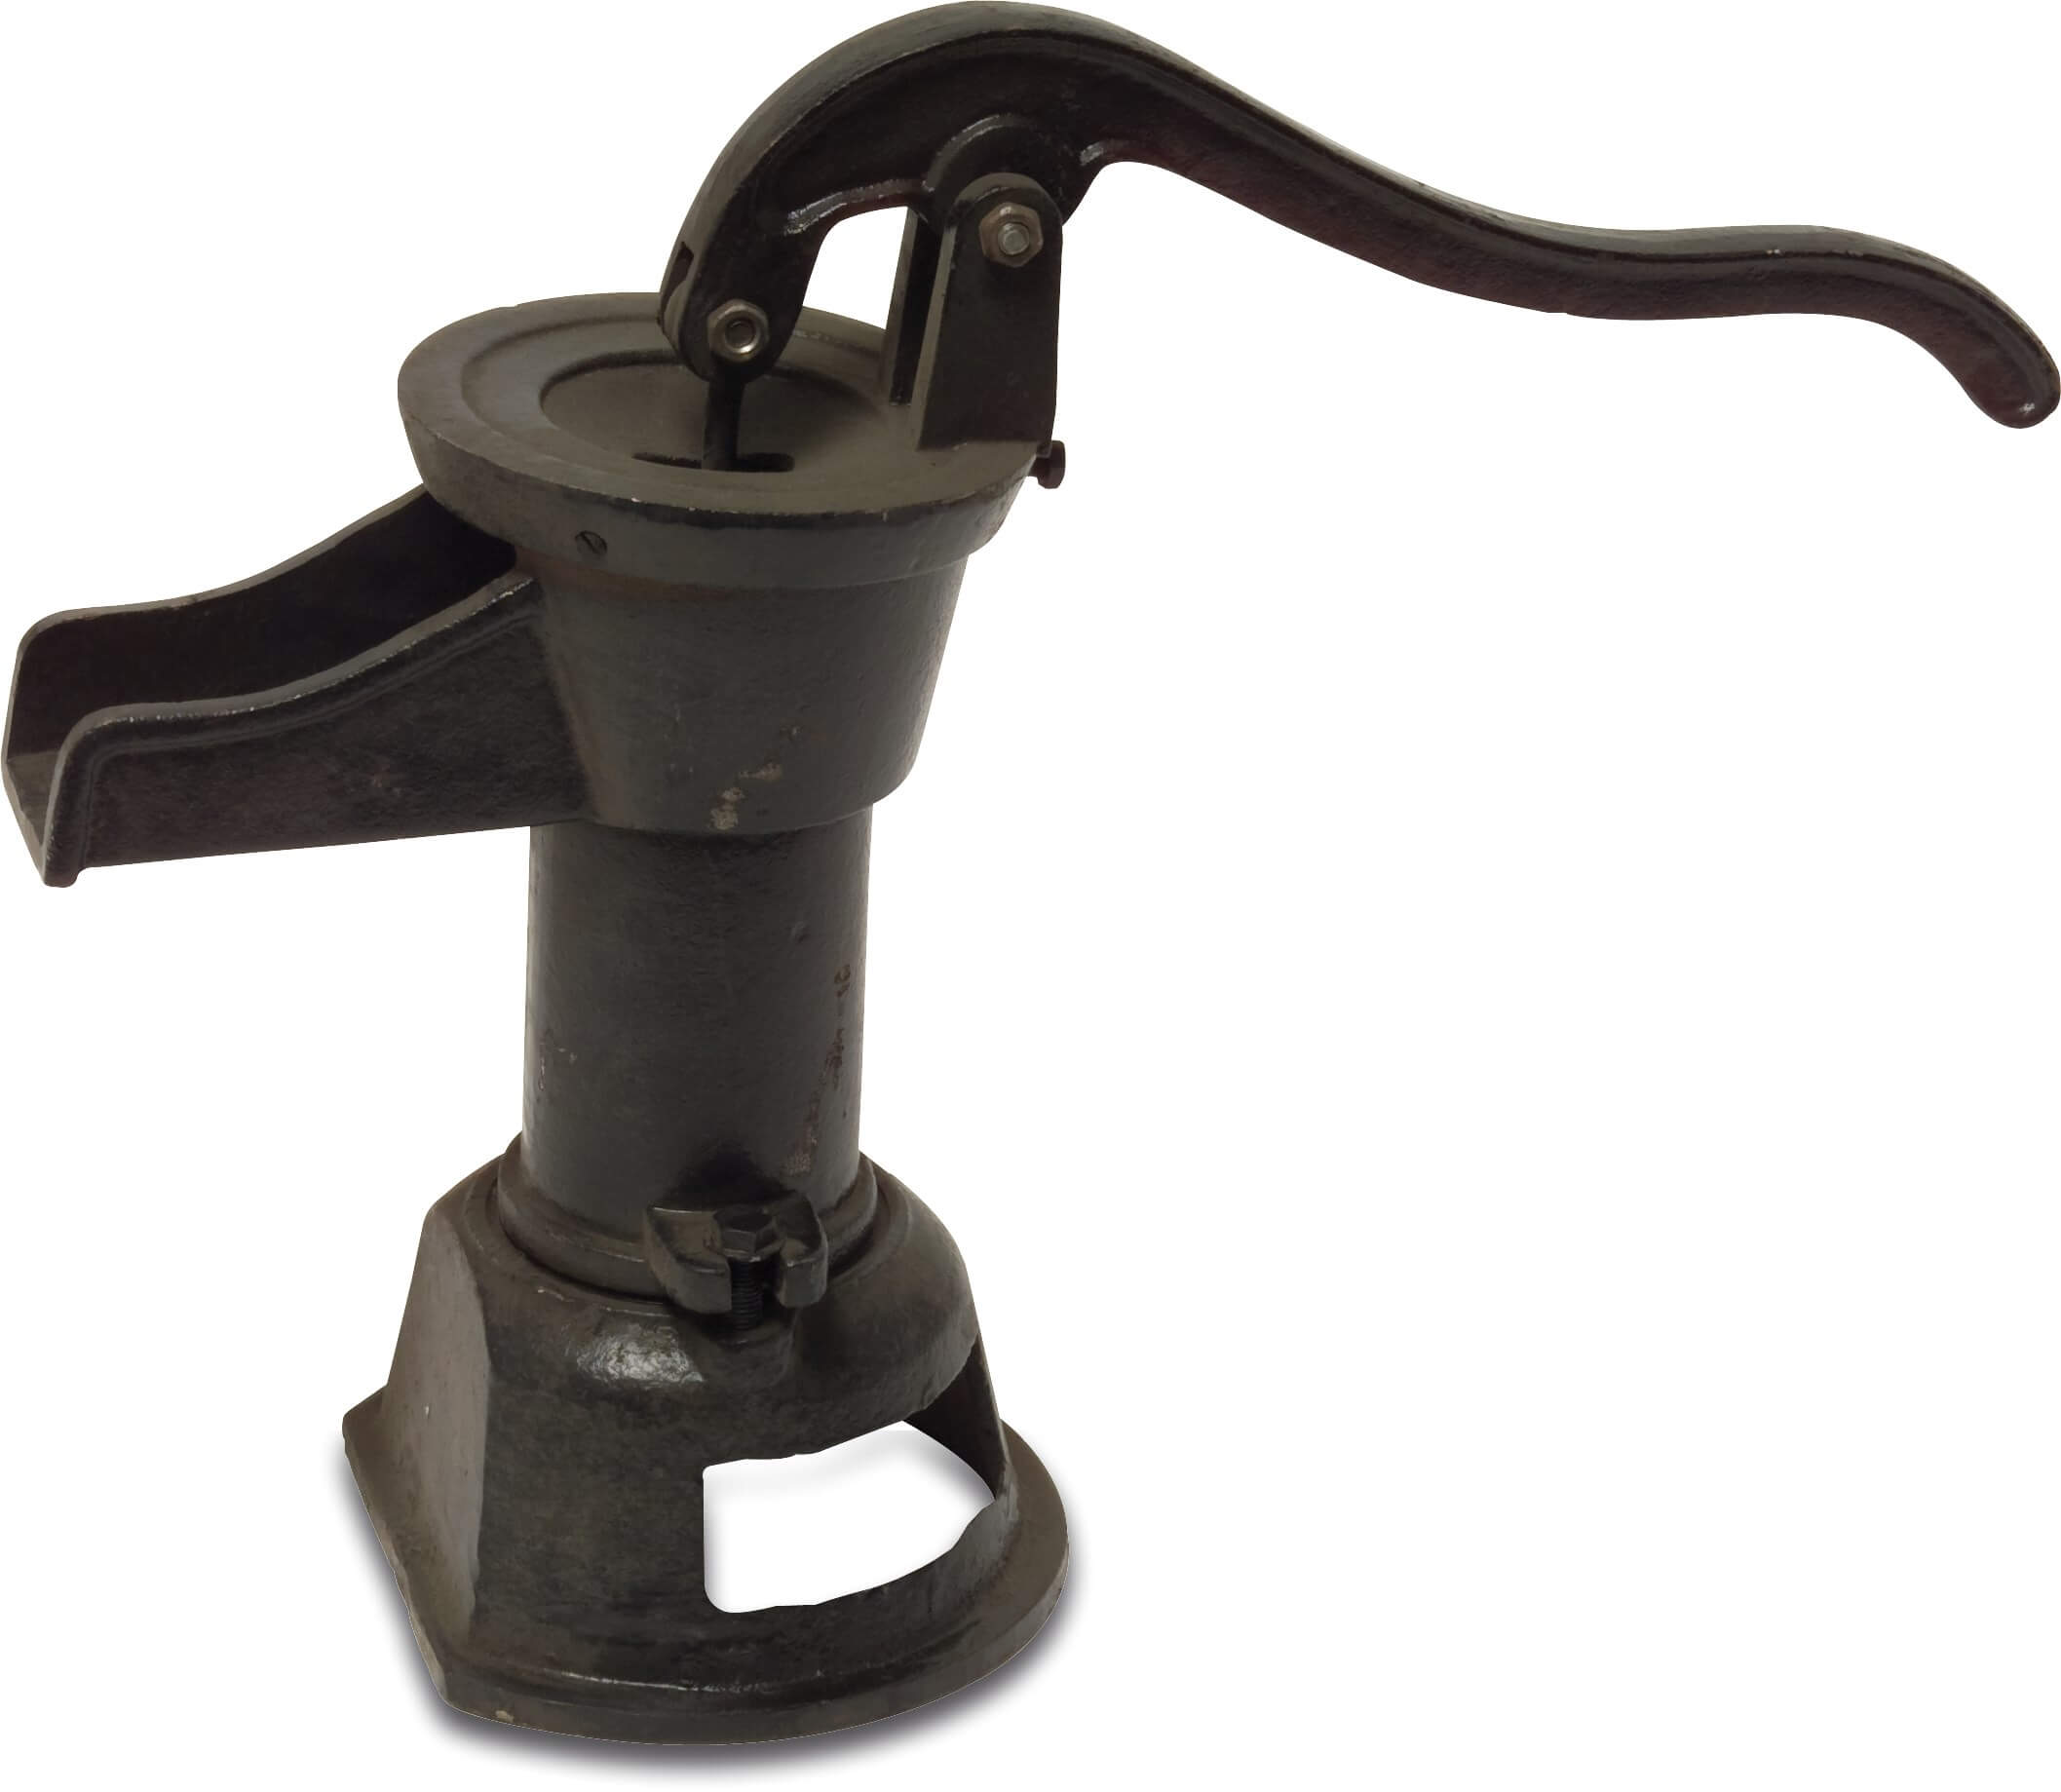 Handpomp gietijzer 1 1/4" binnendraad zwart type pitcher